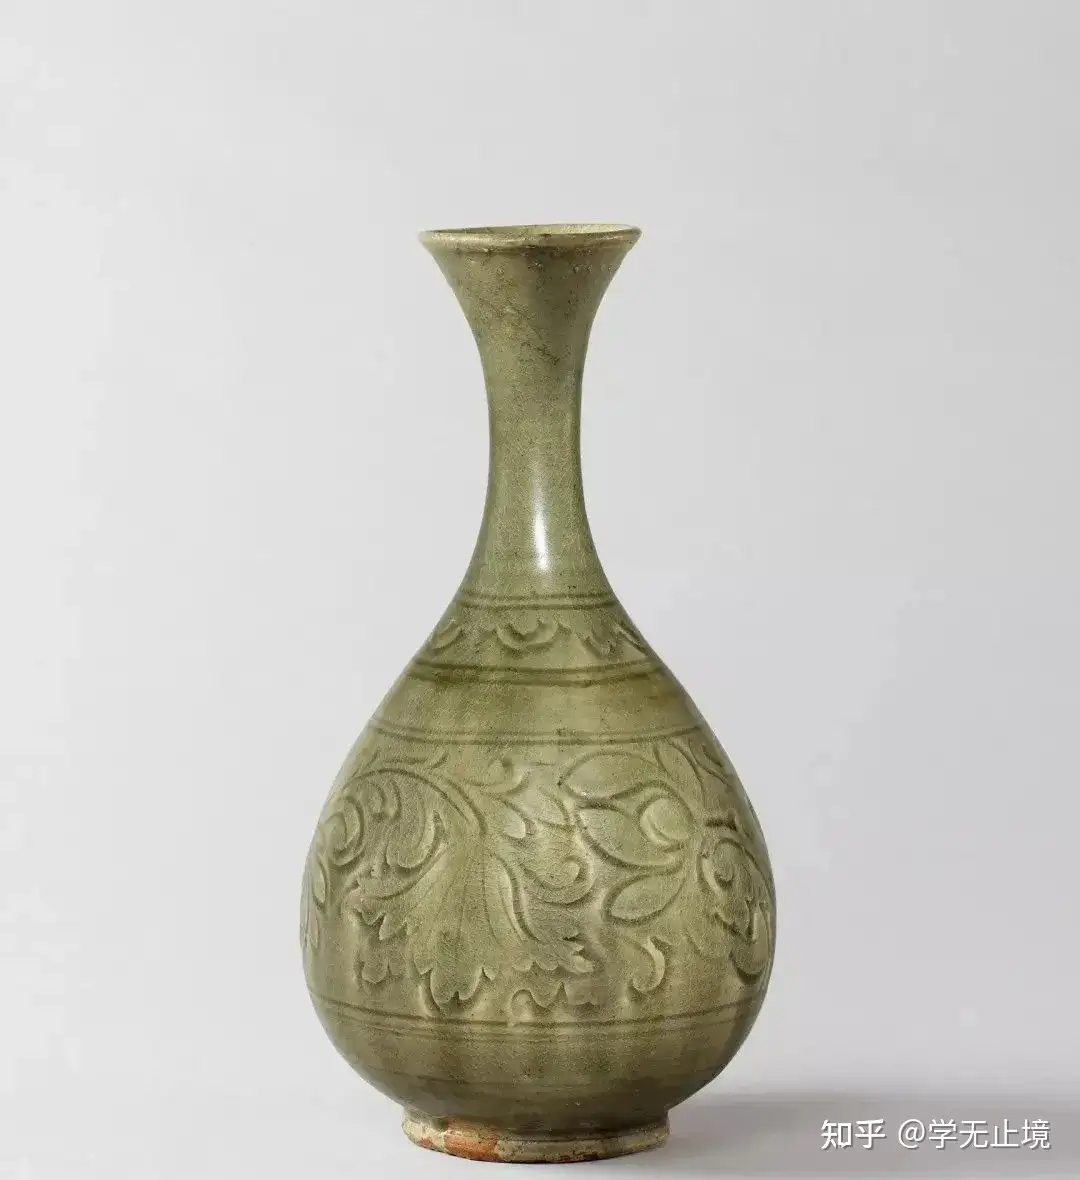 最贵504万，最低46万：史上最贵的30件耀州窑瓷器四川儒行天弈文化传播